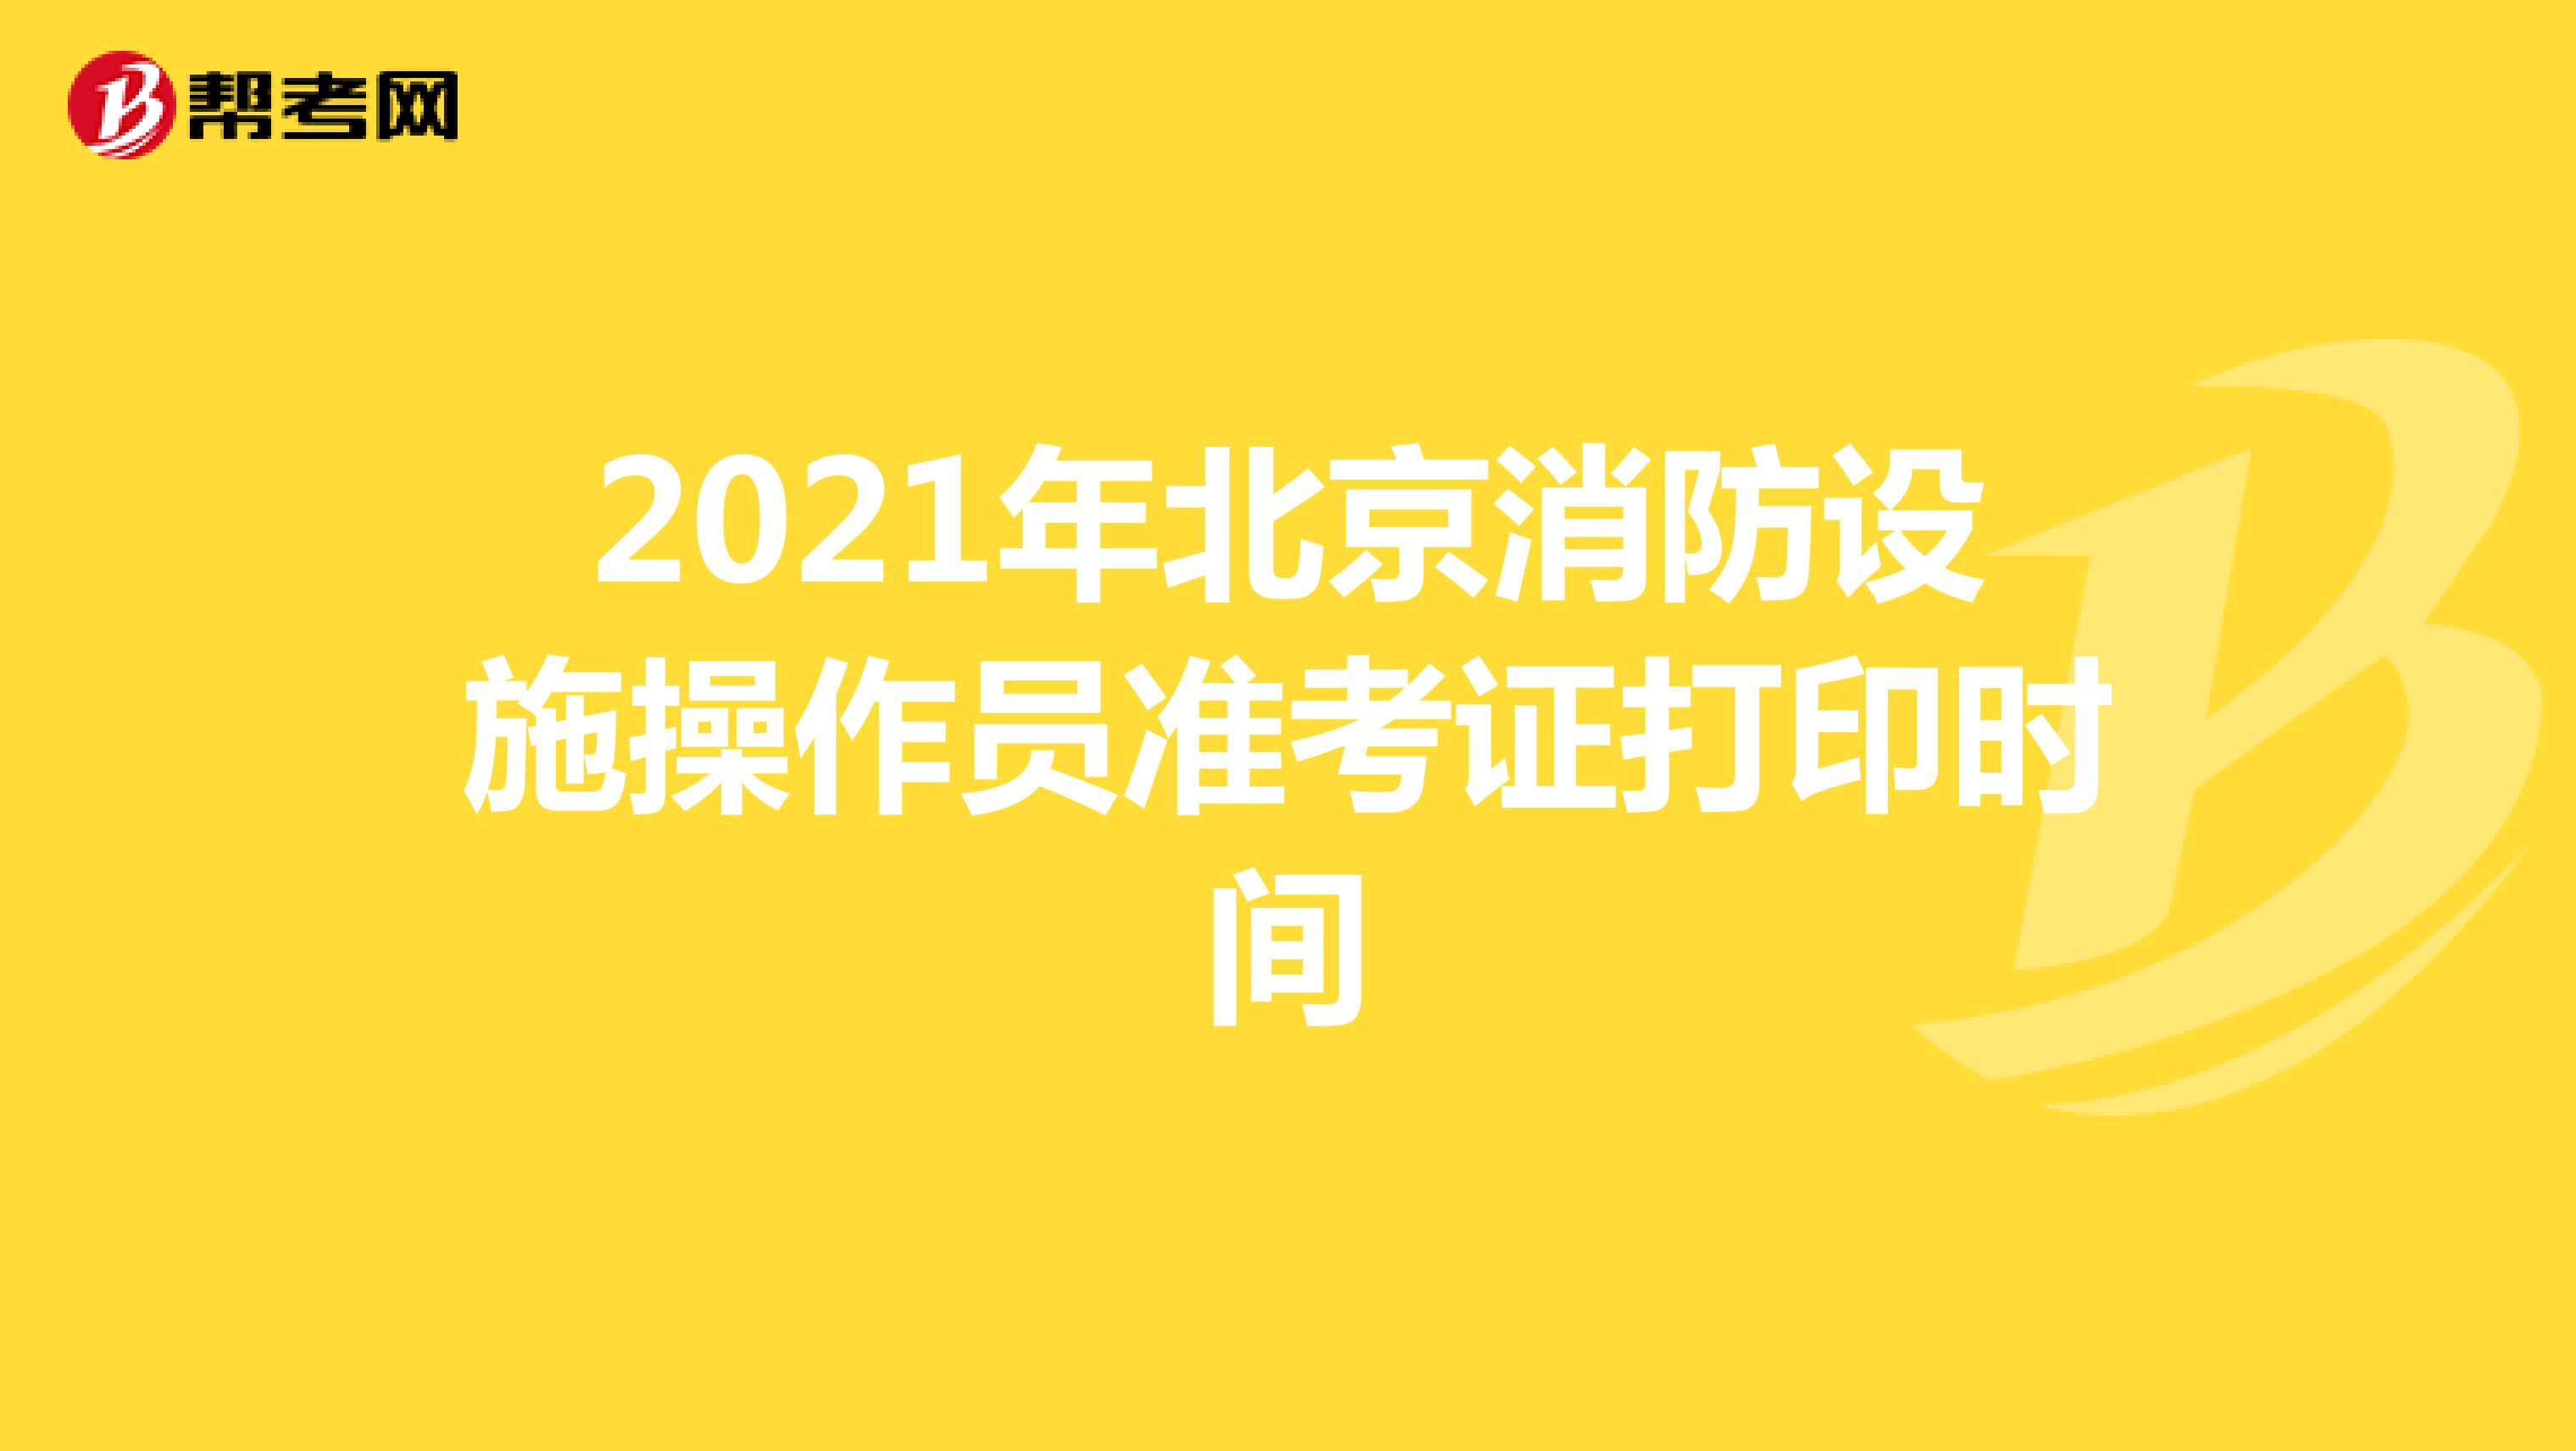 2021年北京消防设施操作员准考证打印时间